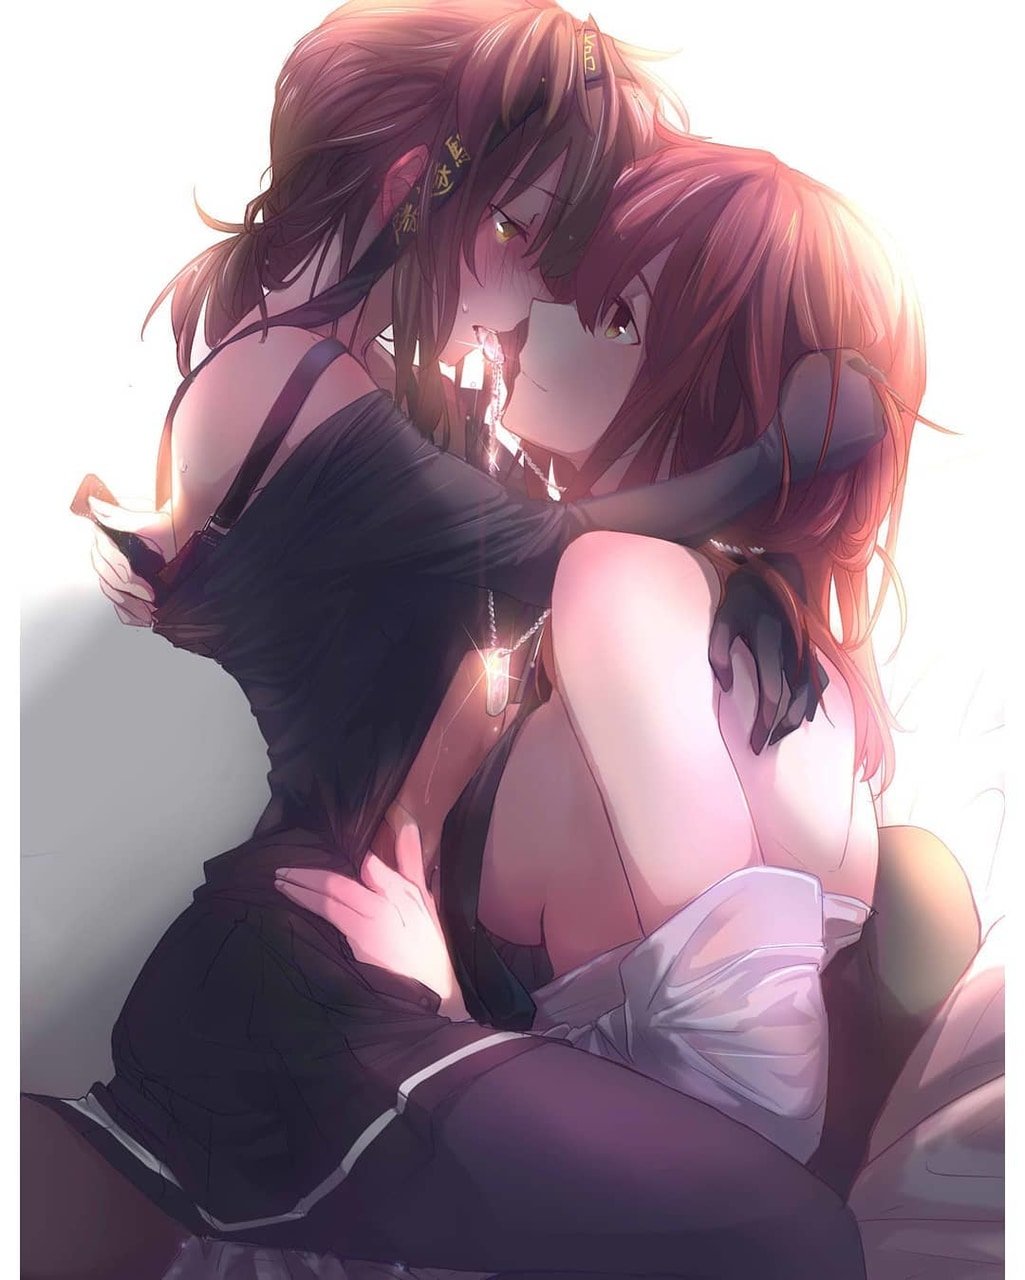 Горячие лесбиянки целуются и ласкают друг друга